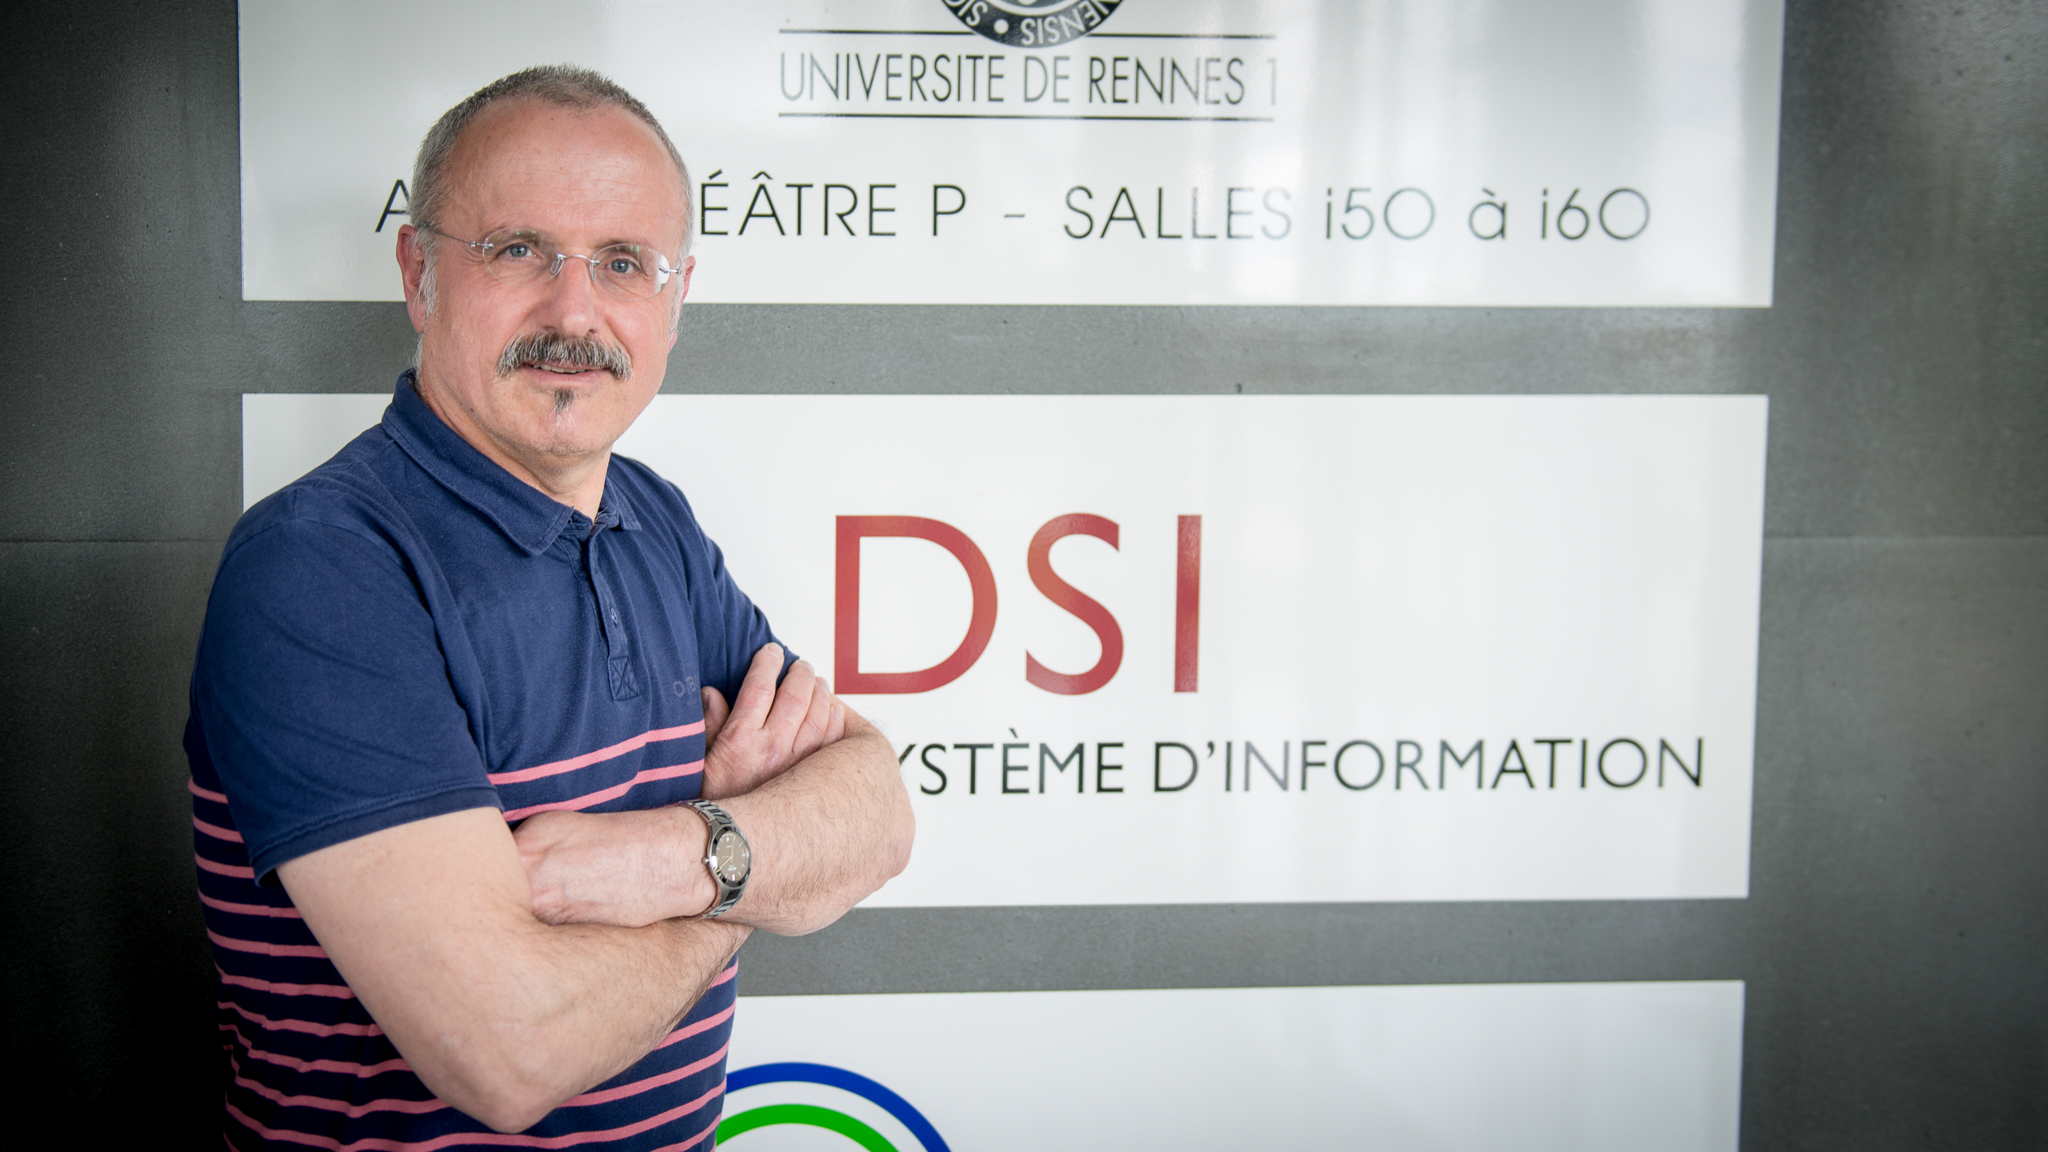 Serge Aumont, head of the IT Security department at the Université de Rennes 1